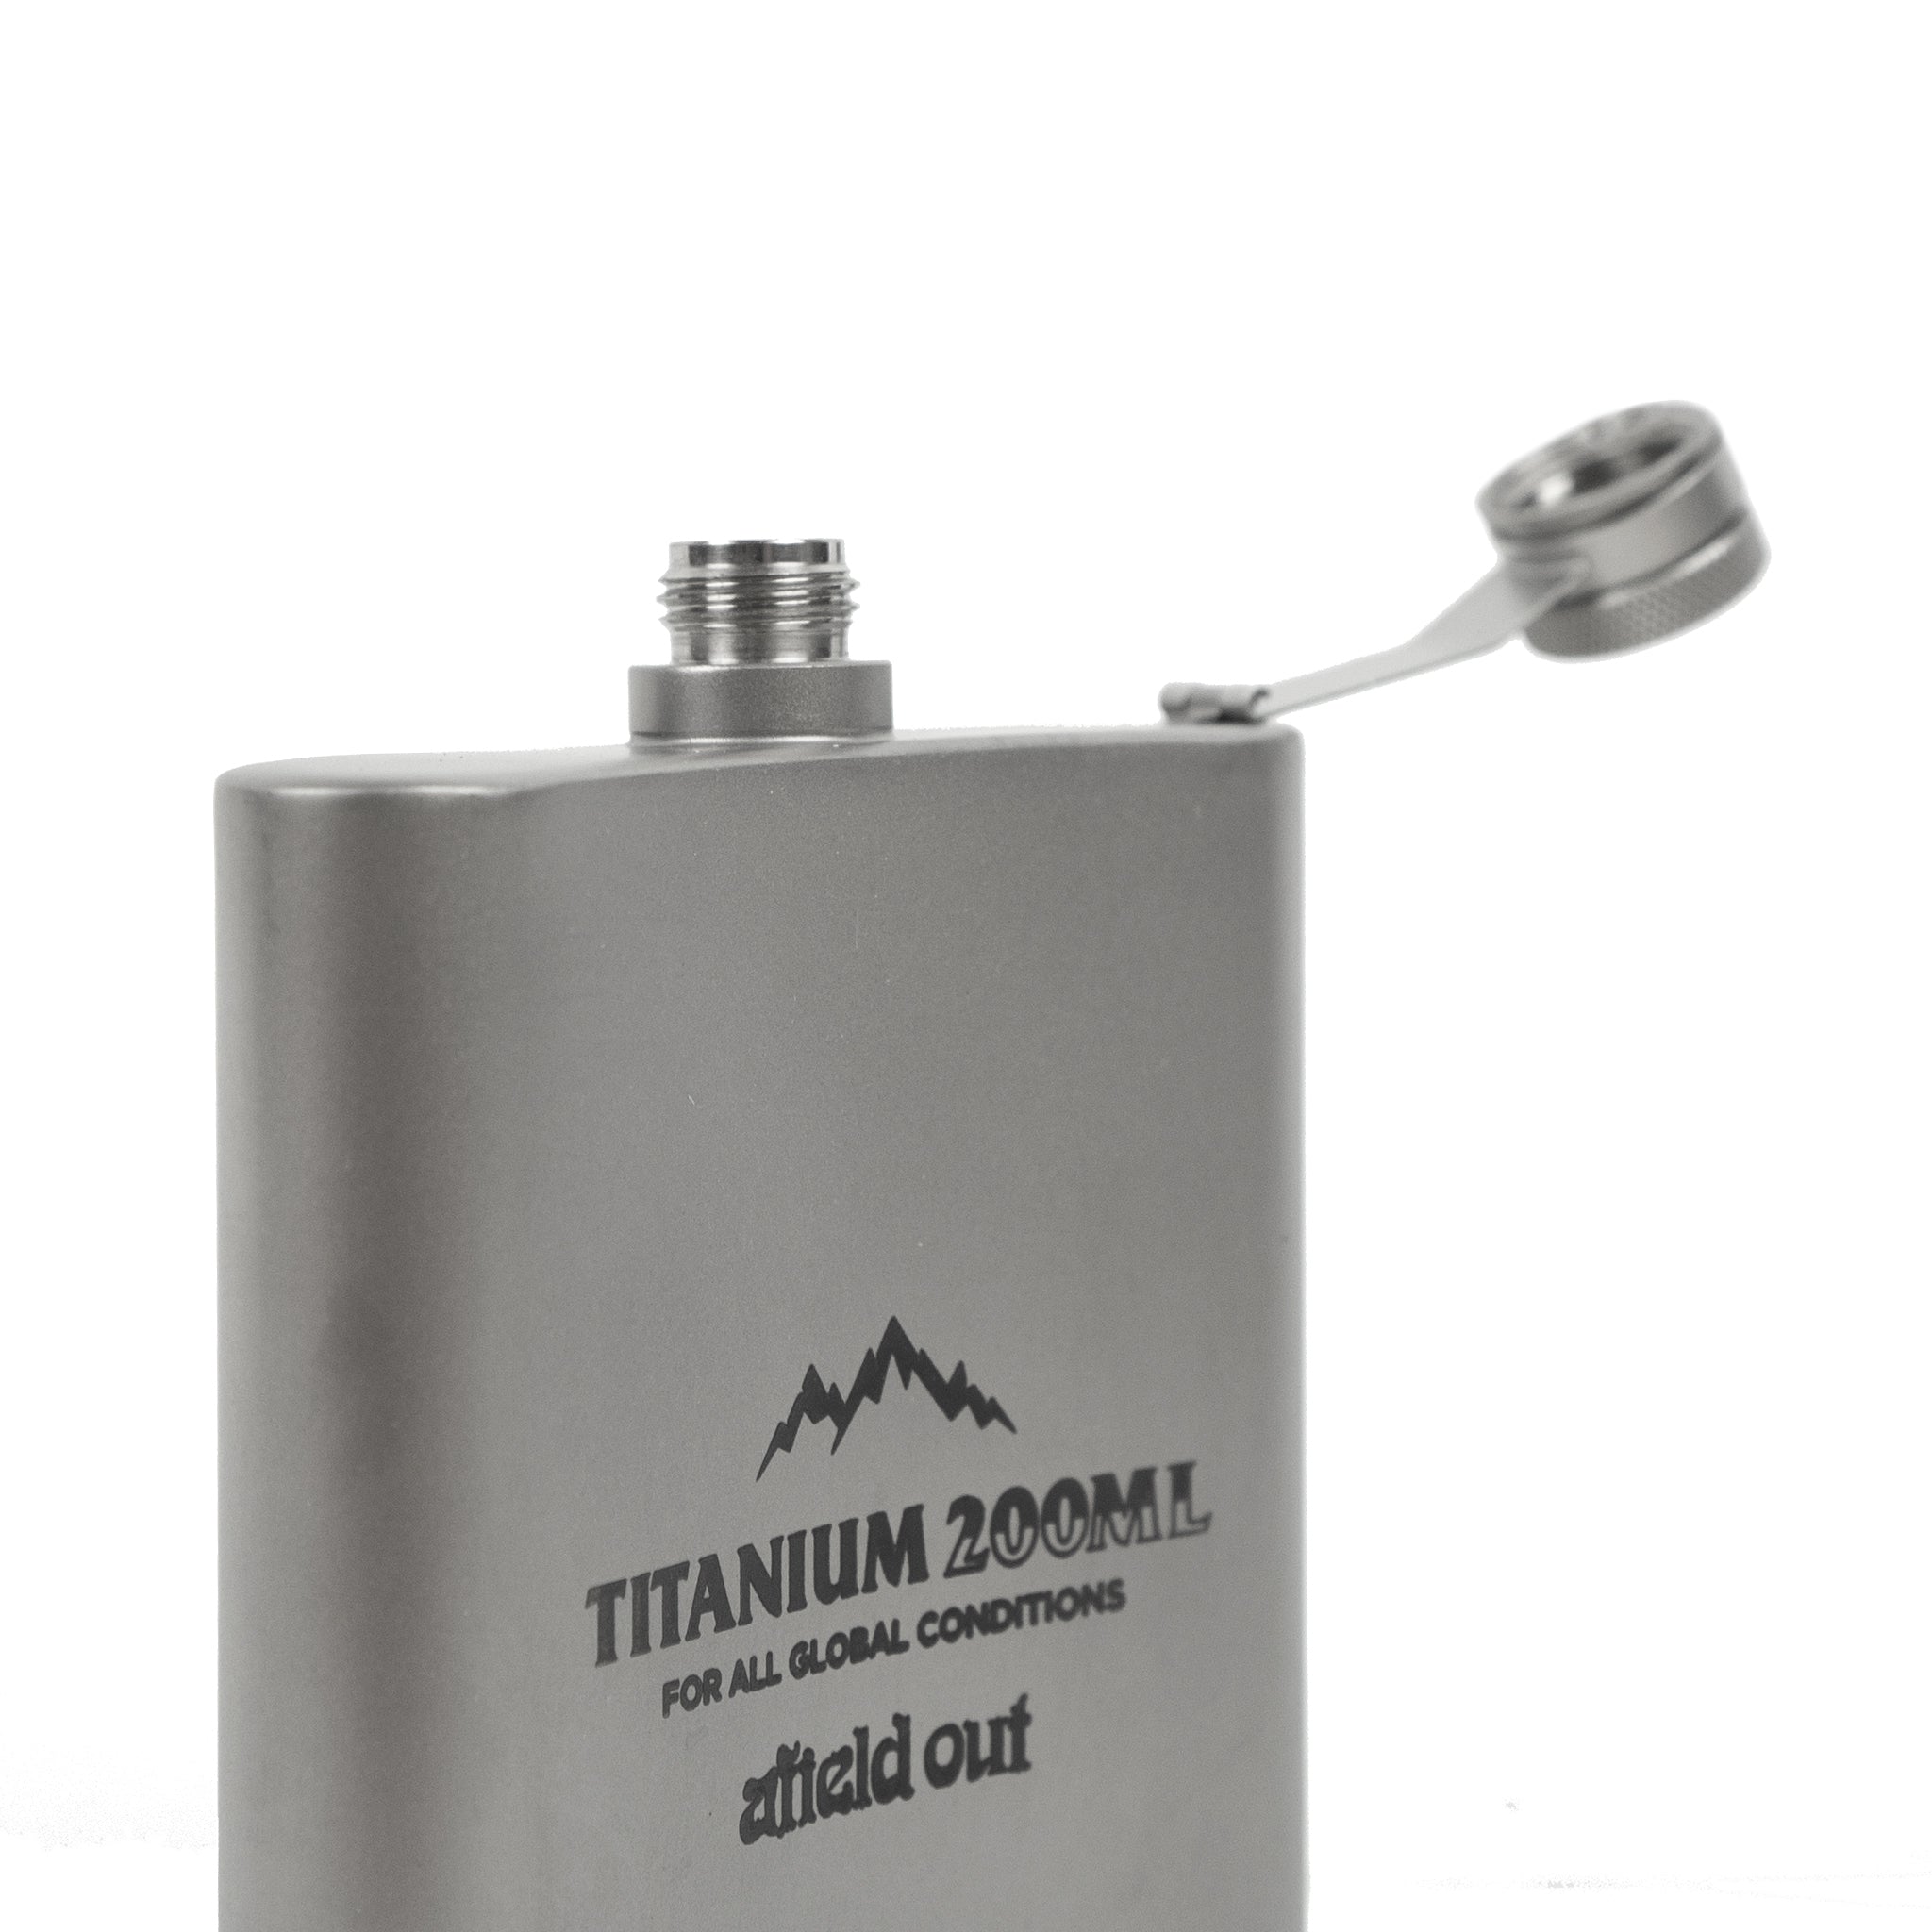 Titanium Flask